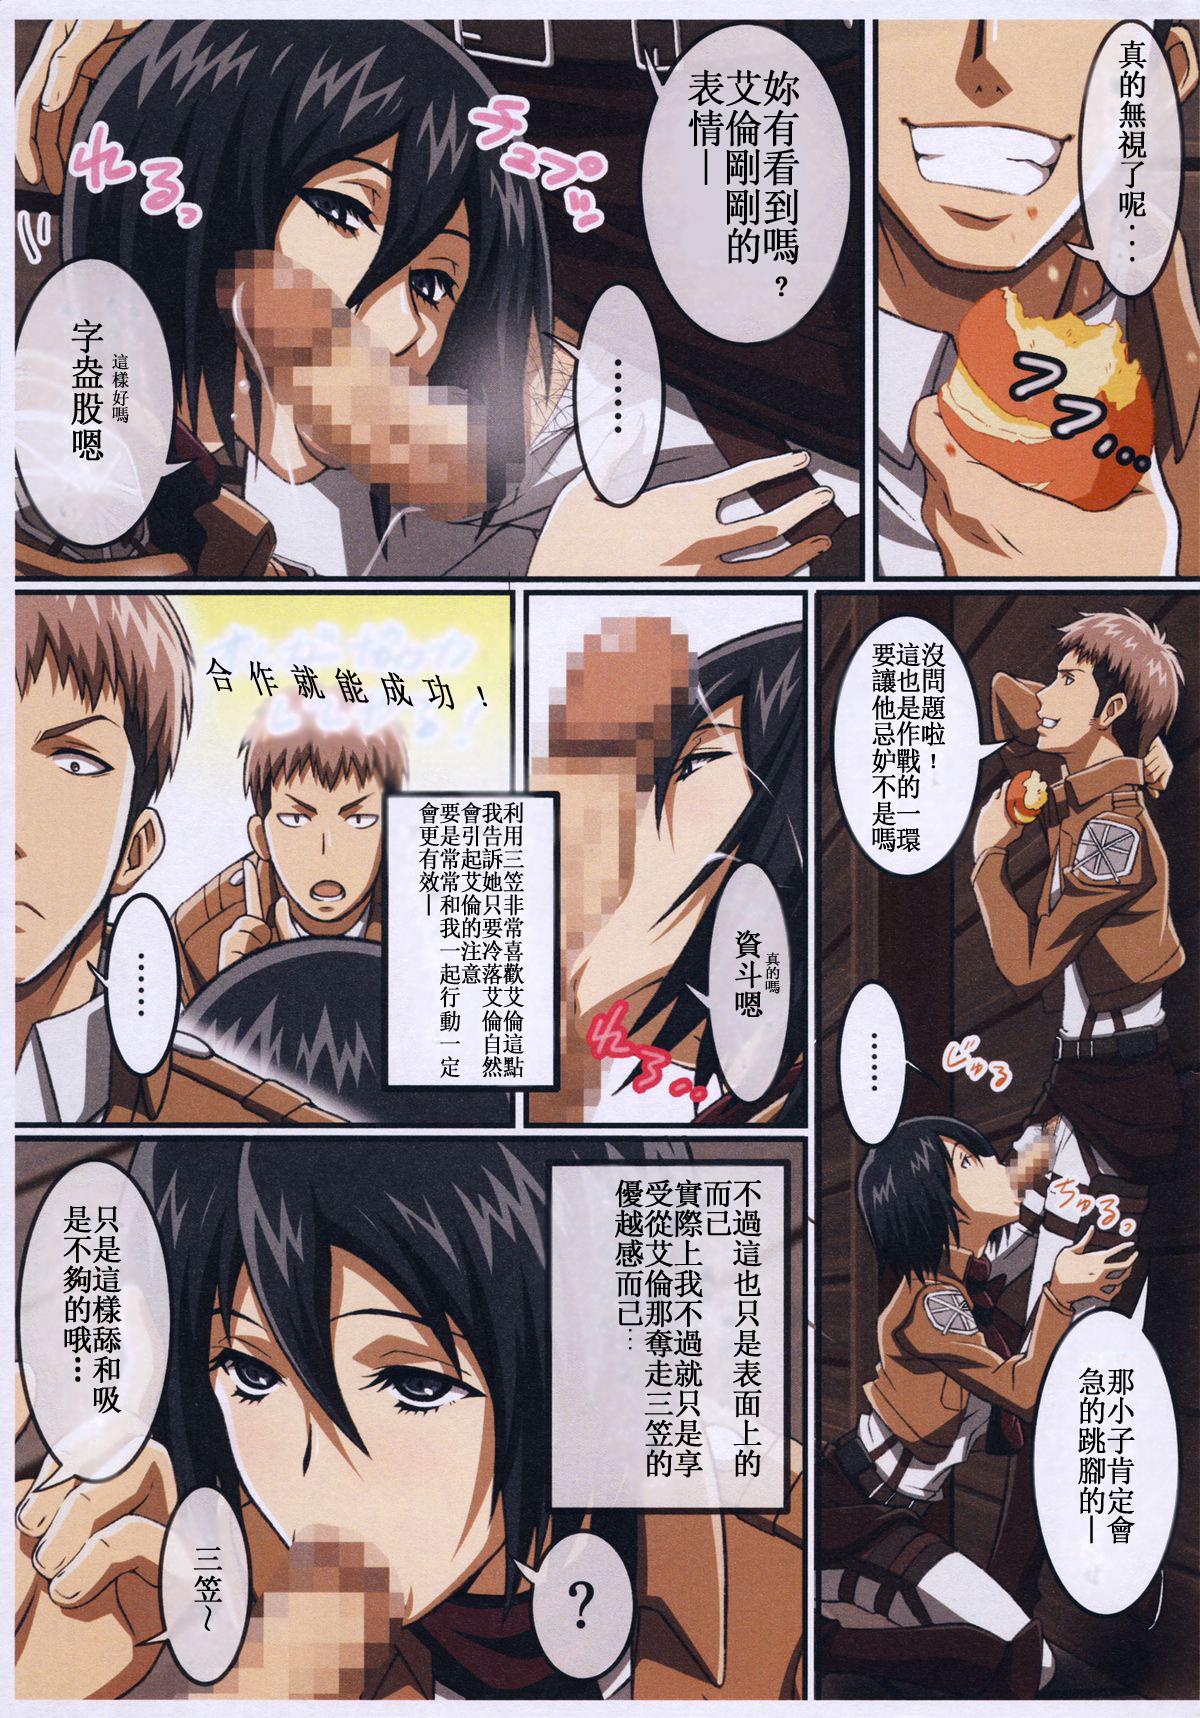 Screaming JAN X JAN - Shingeki no kyojin Price - Page 3